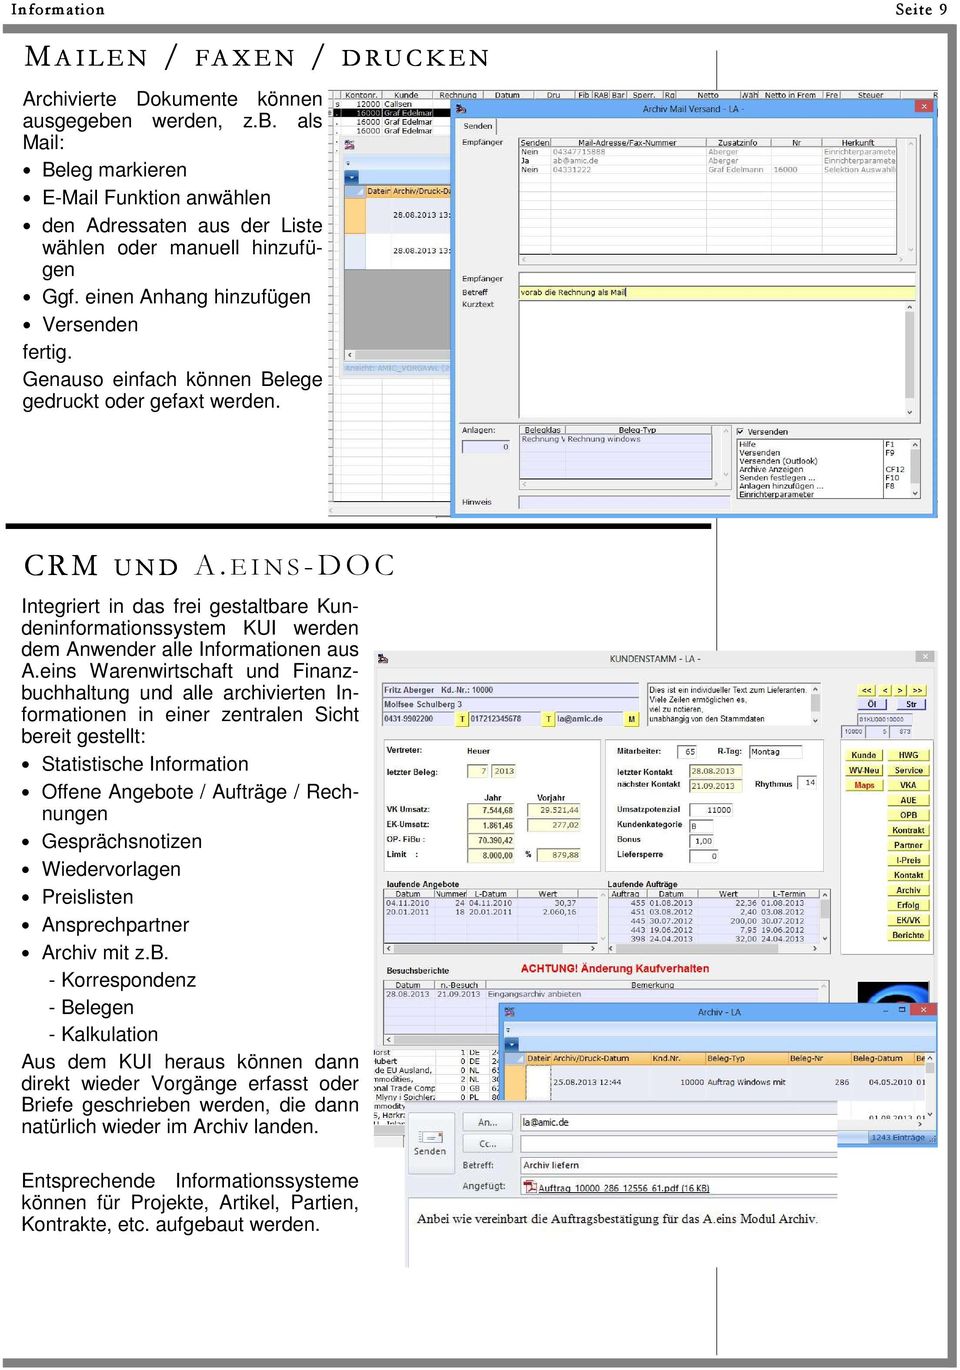 EINS-DOC Integriert in das frei gestaltbare Kundeninformationssystem KUI werden dem Anwender alle Informationen aus A.